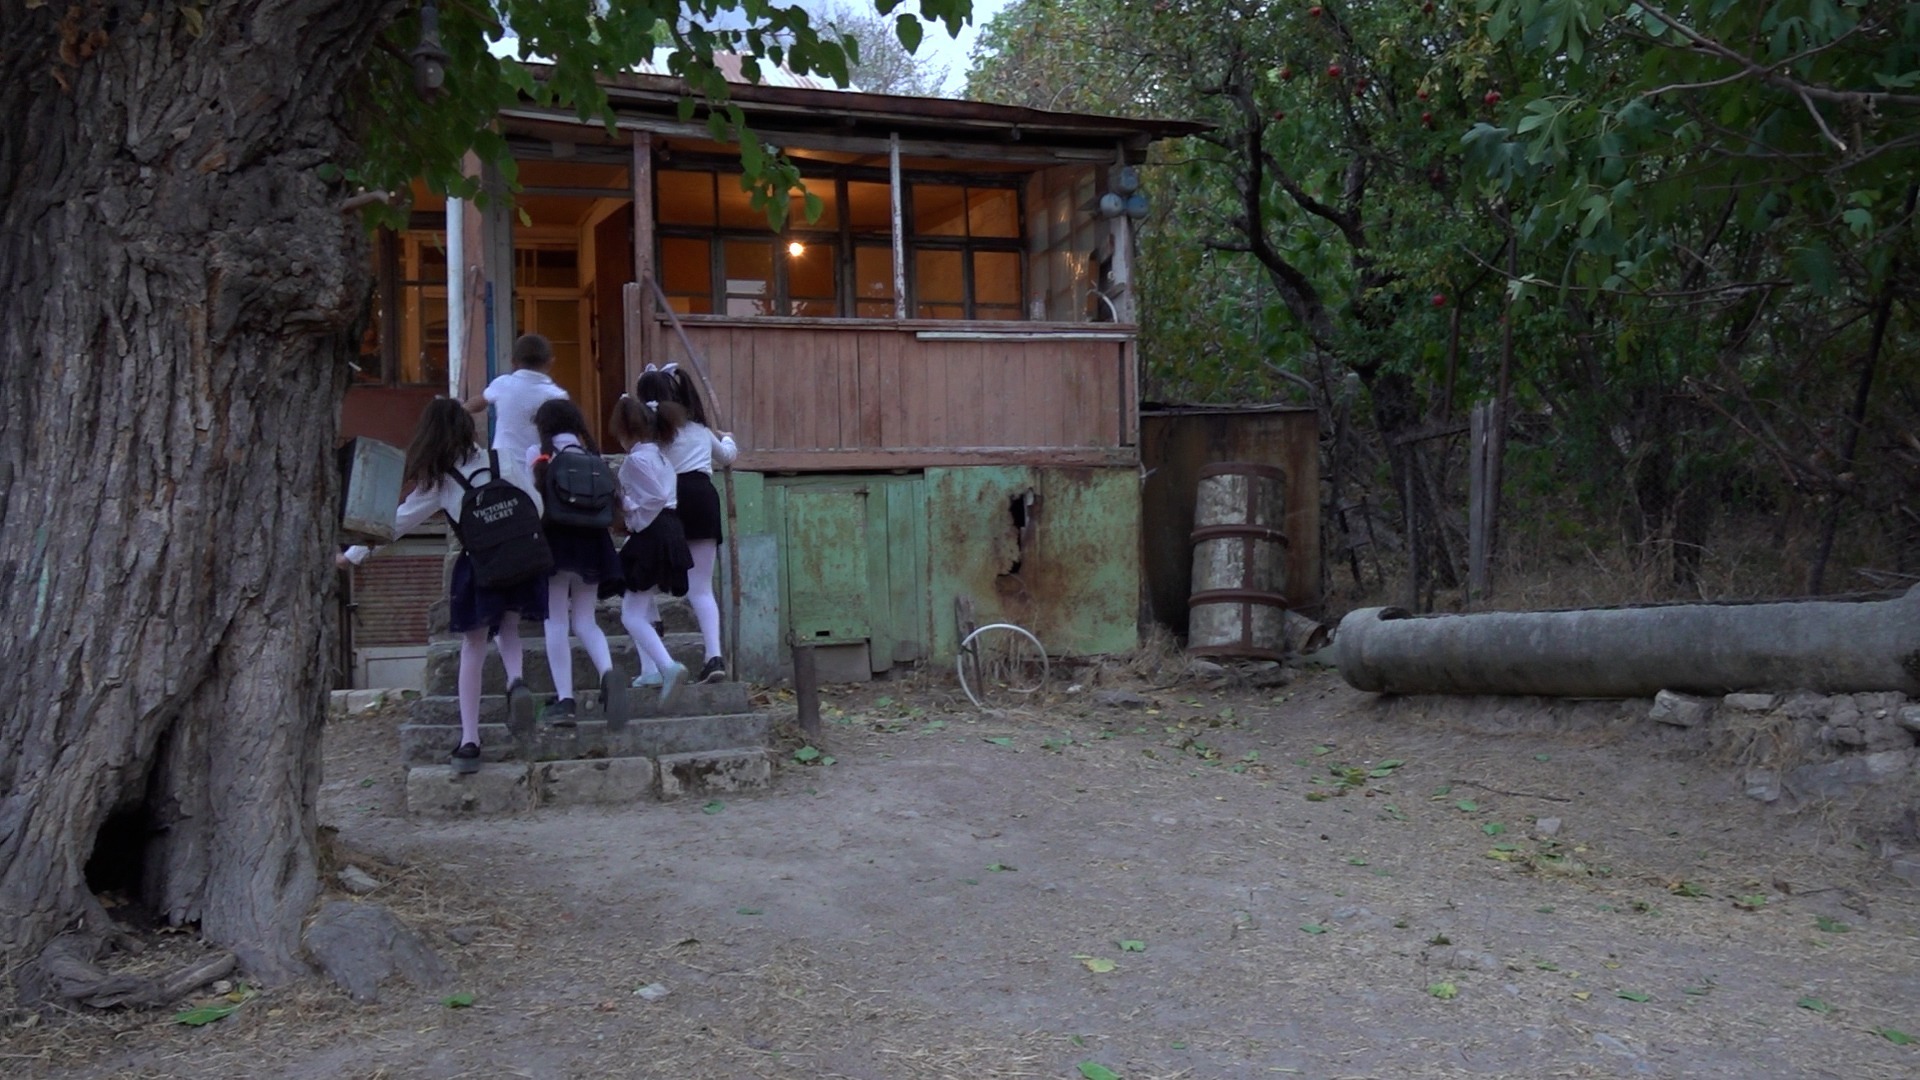 Մարտակերտի Վարնկաթաղ համայնքում պապական տունը դպրոց է դարձել